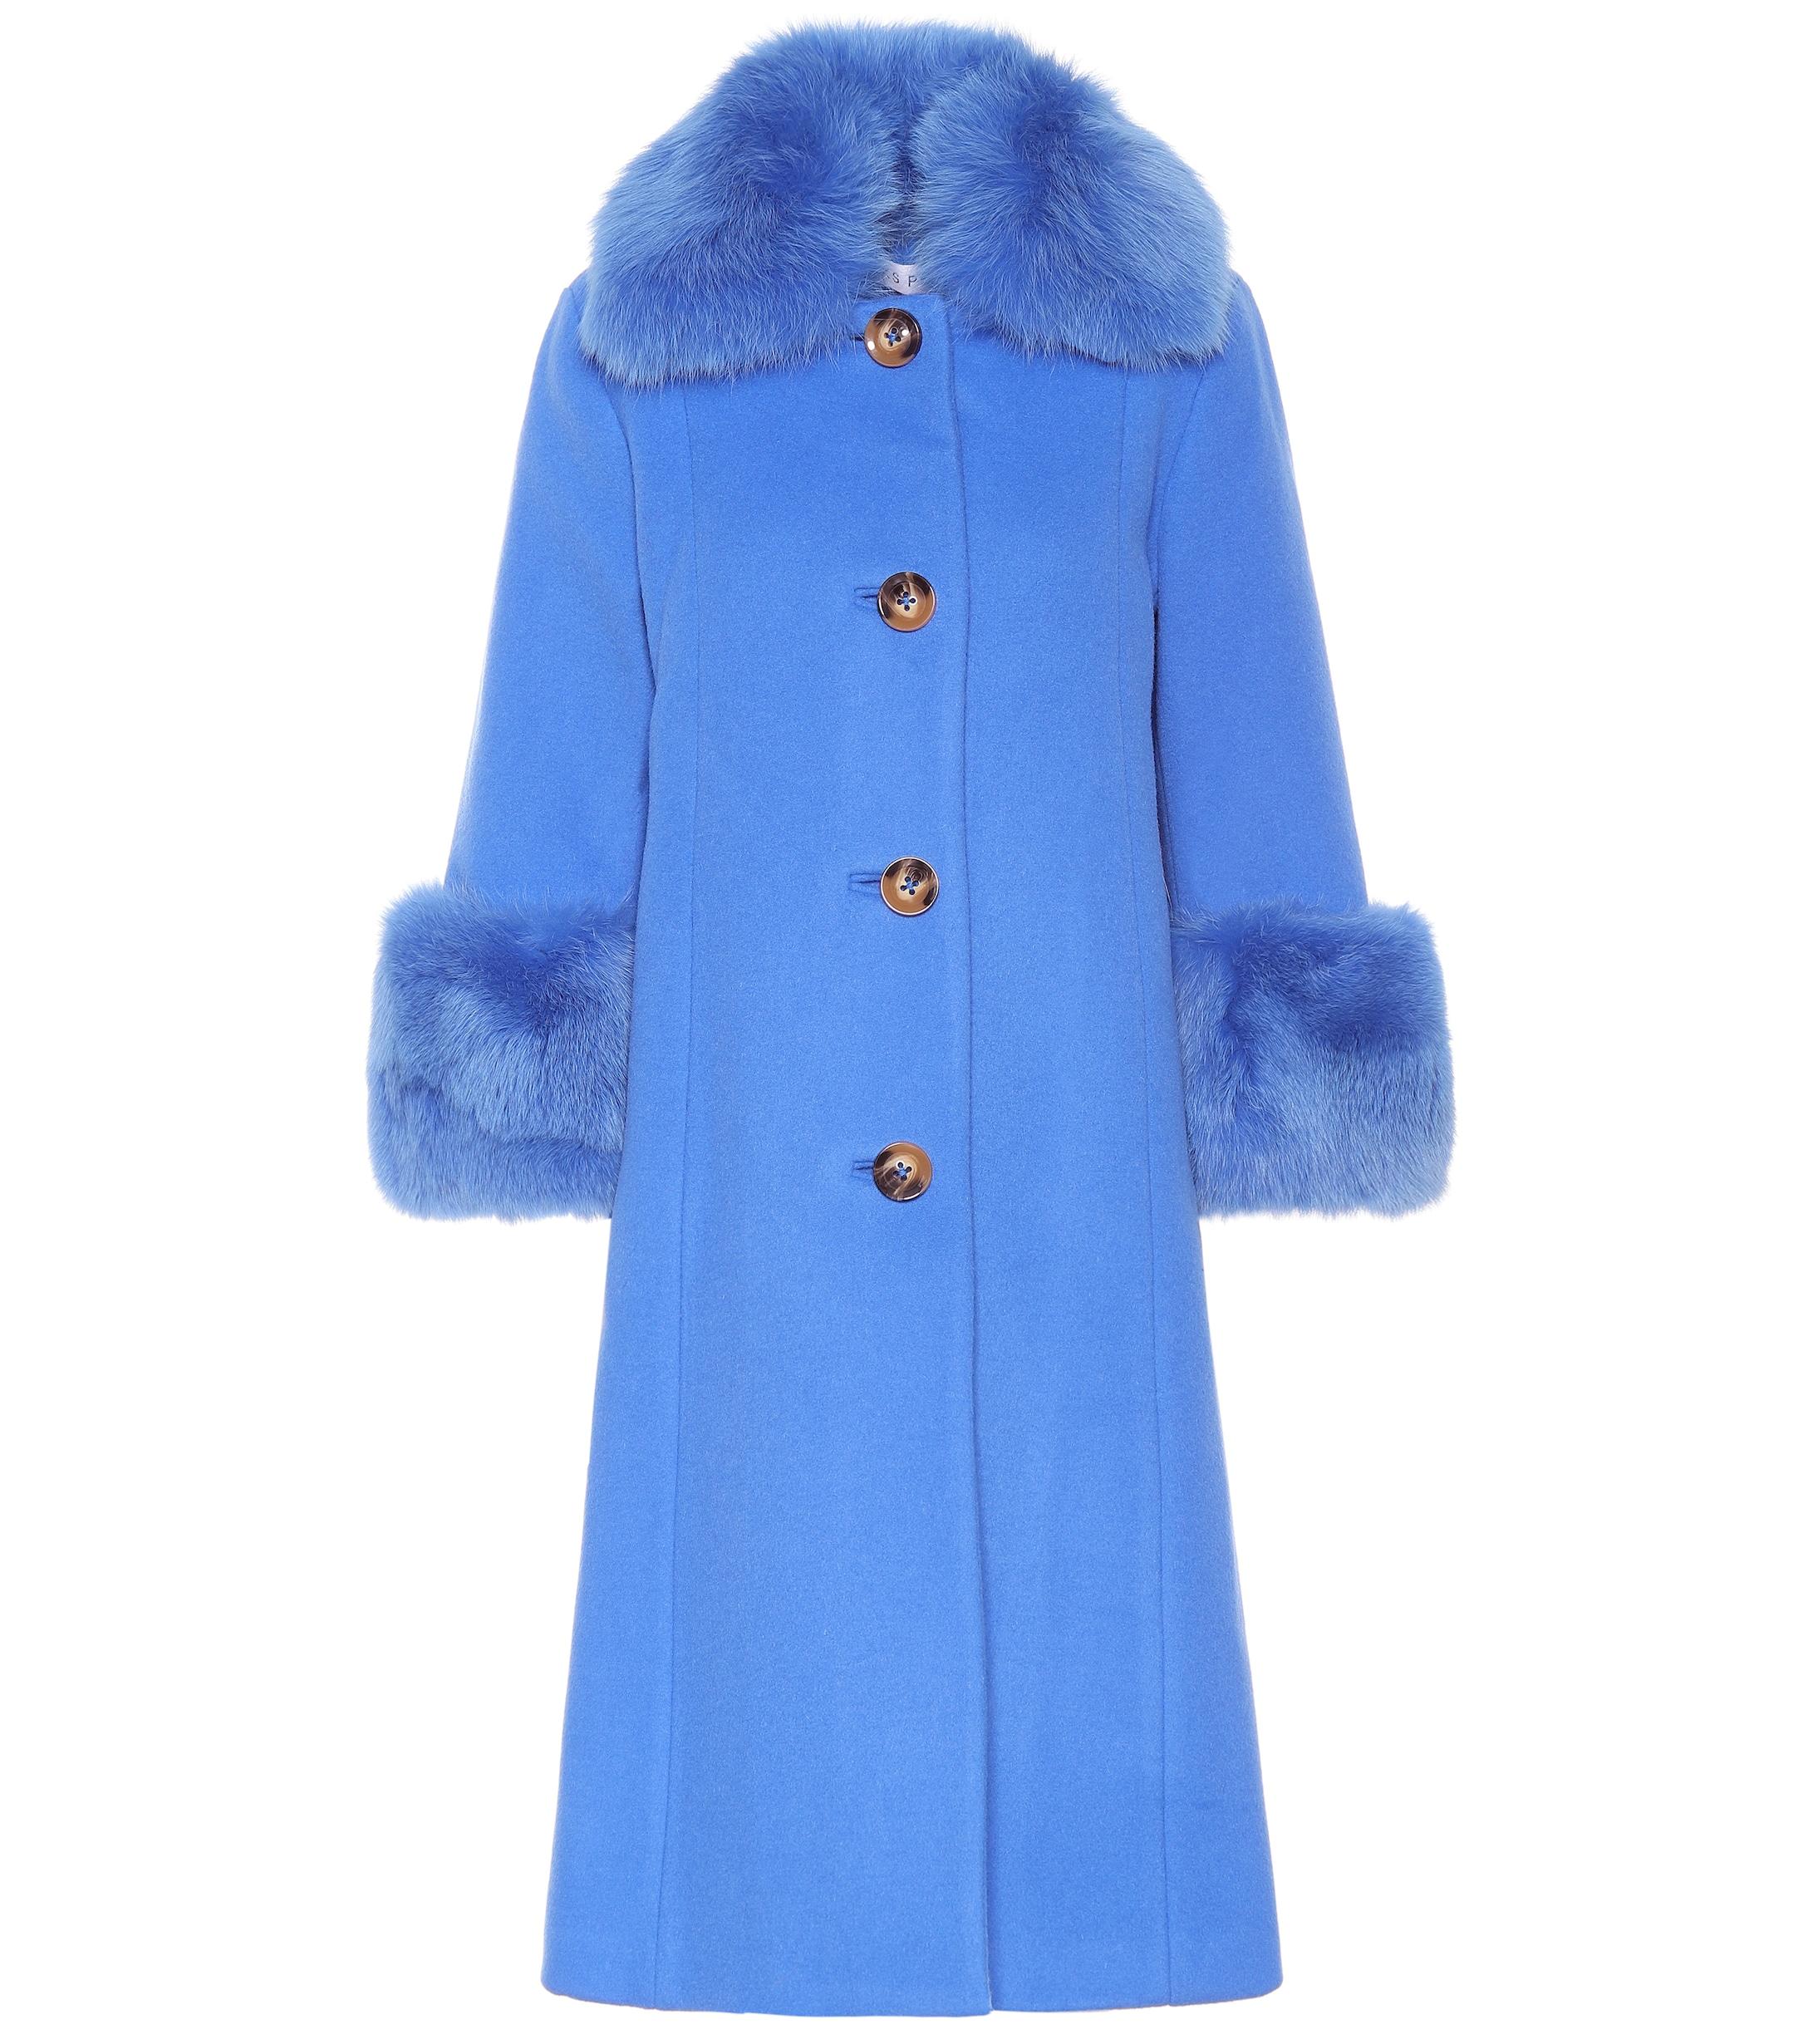 Saks Potts Yvonne Fur-trimmed Wool Coat in Blue - Lyst